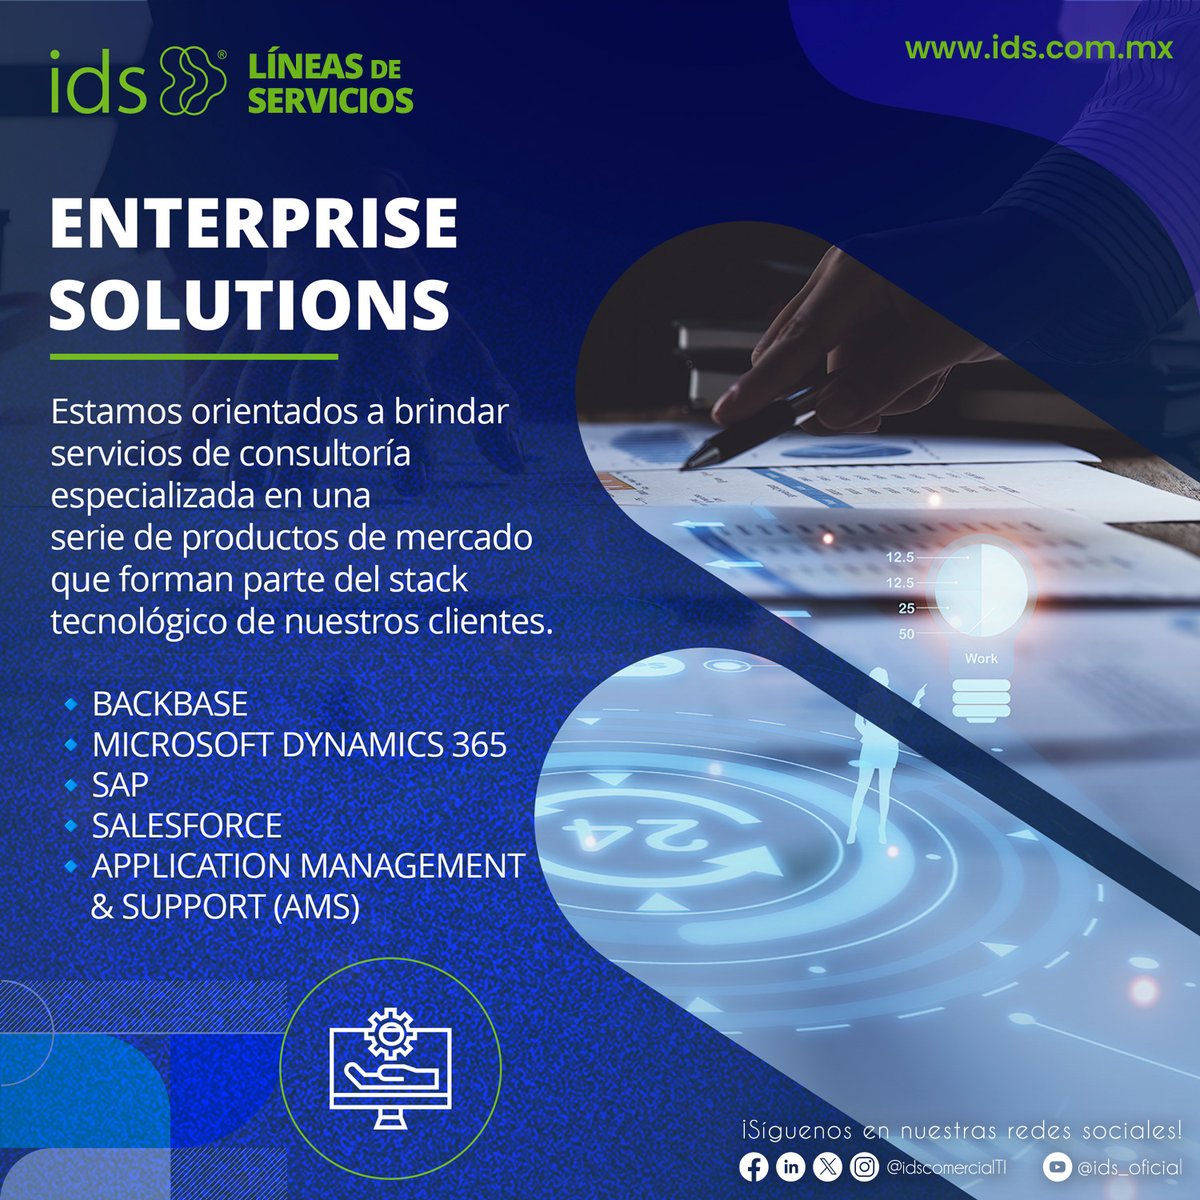 🚀 Enterprise Solutions

En @idscomercialti, estamos orientados a brindar servicios de consultoría especializada en una serie de productos de mercado que forman parte del stack tecnológico de nuestros clientes.

#EnterpriseSolutions #ConsultoríaTecnológica   #idsLineaDeServicios